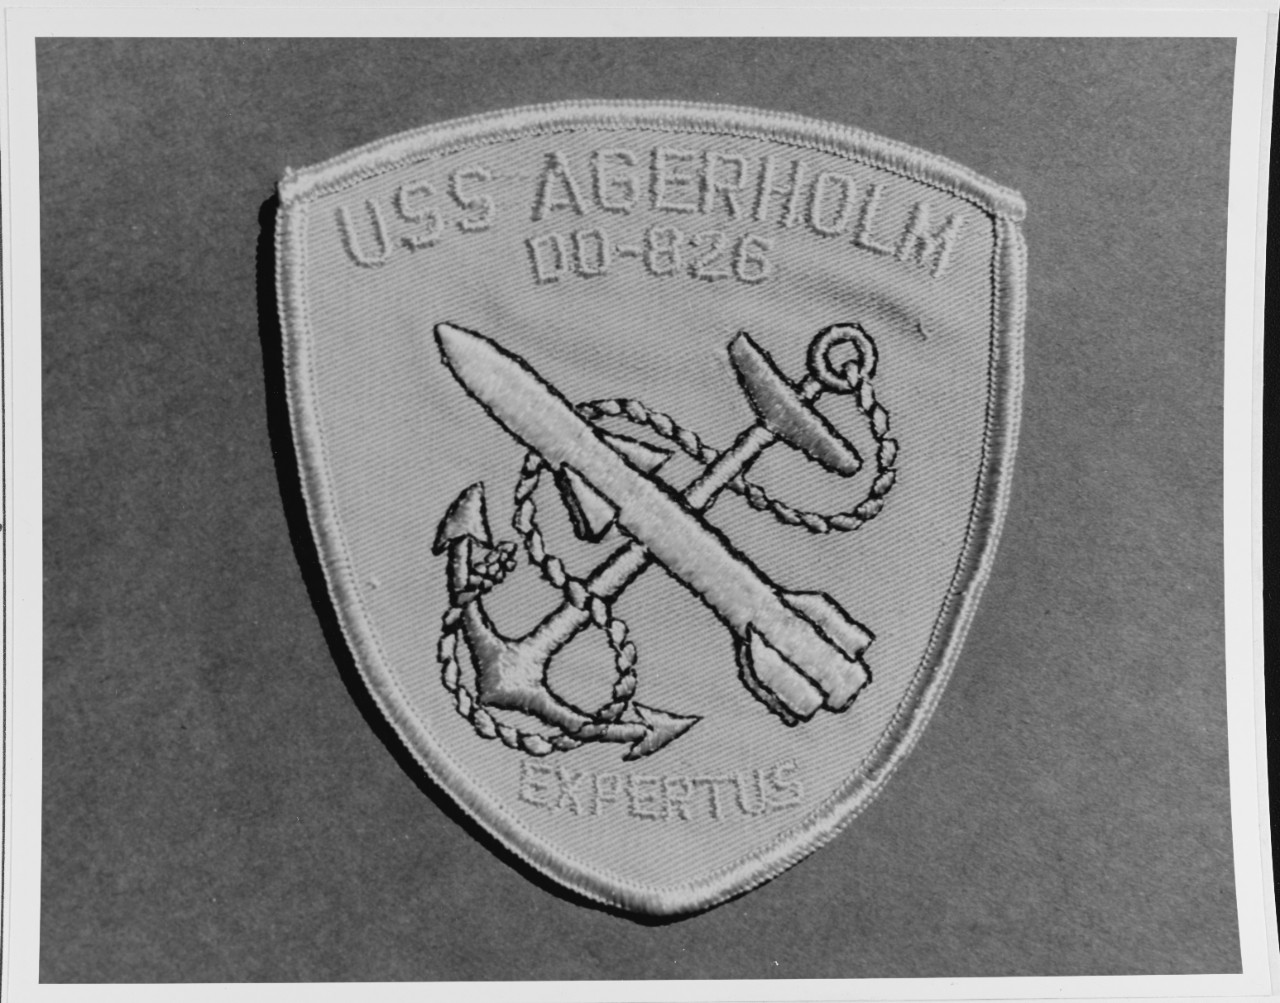 Insignia: USS AGERHOLM (DD - 826)